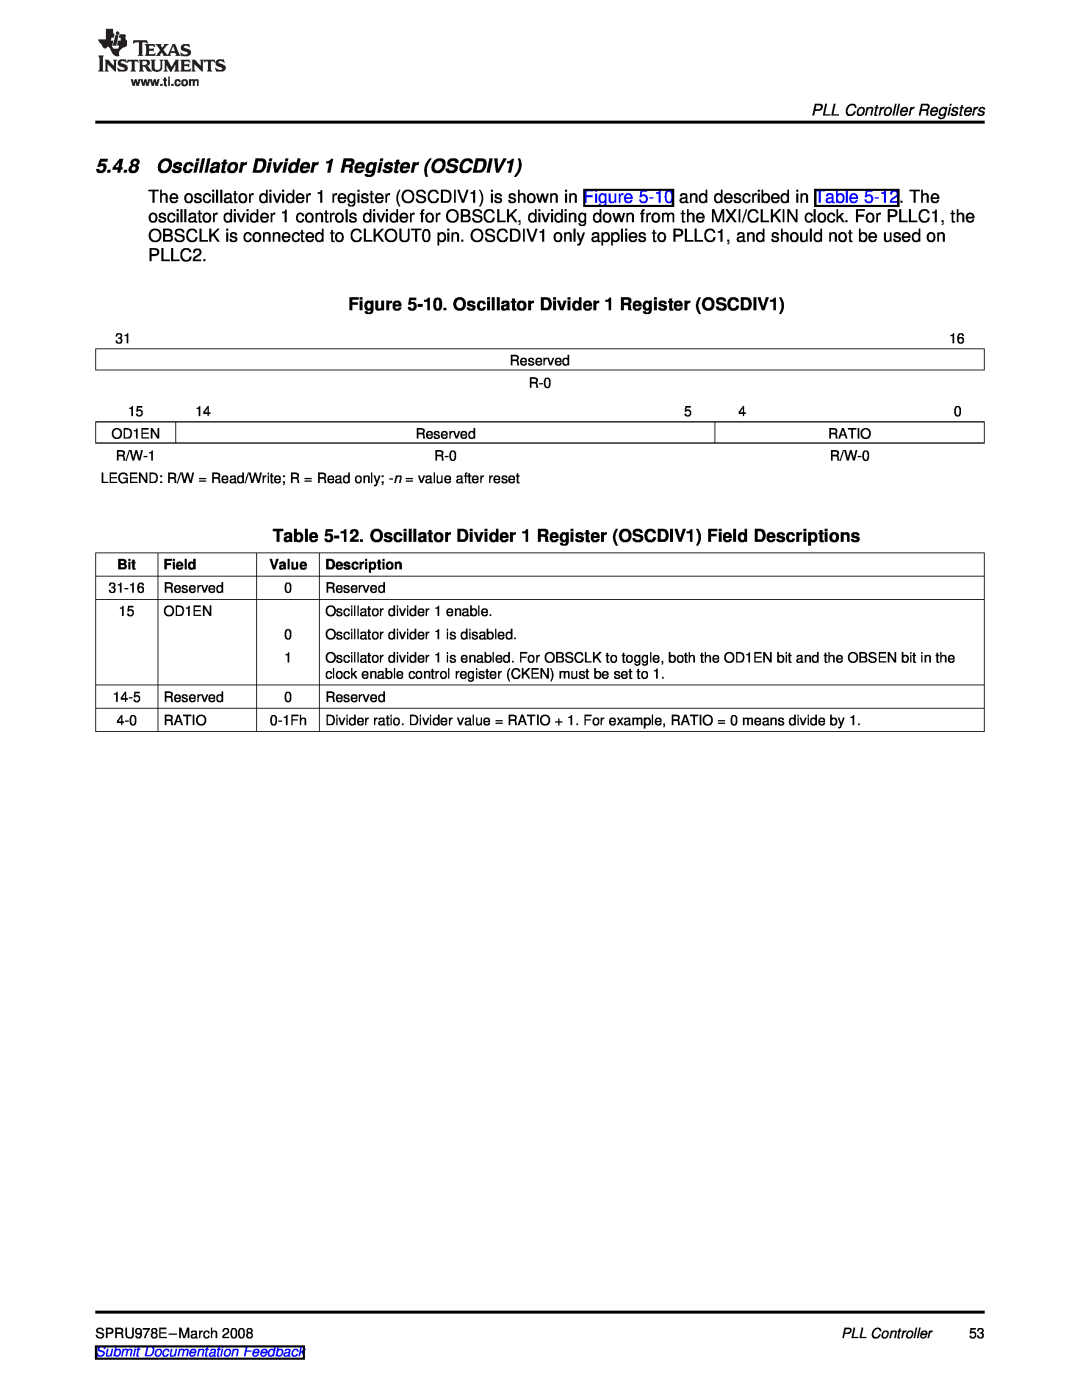 Texas Instruments TMS320DM643x 10. Oscillator Divider 1 Register OSCDIV1, PLL Controller Registers, Field, Description 